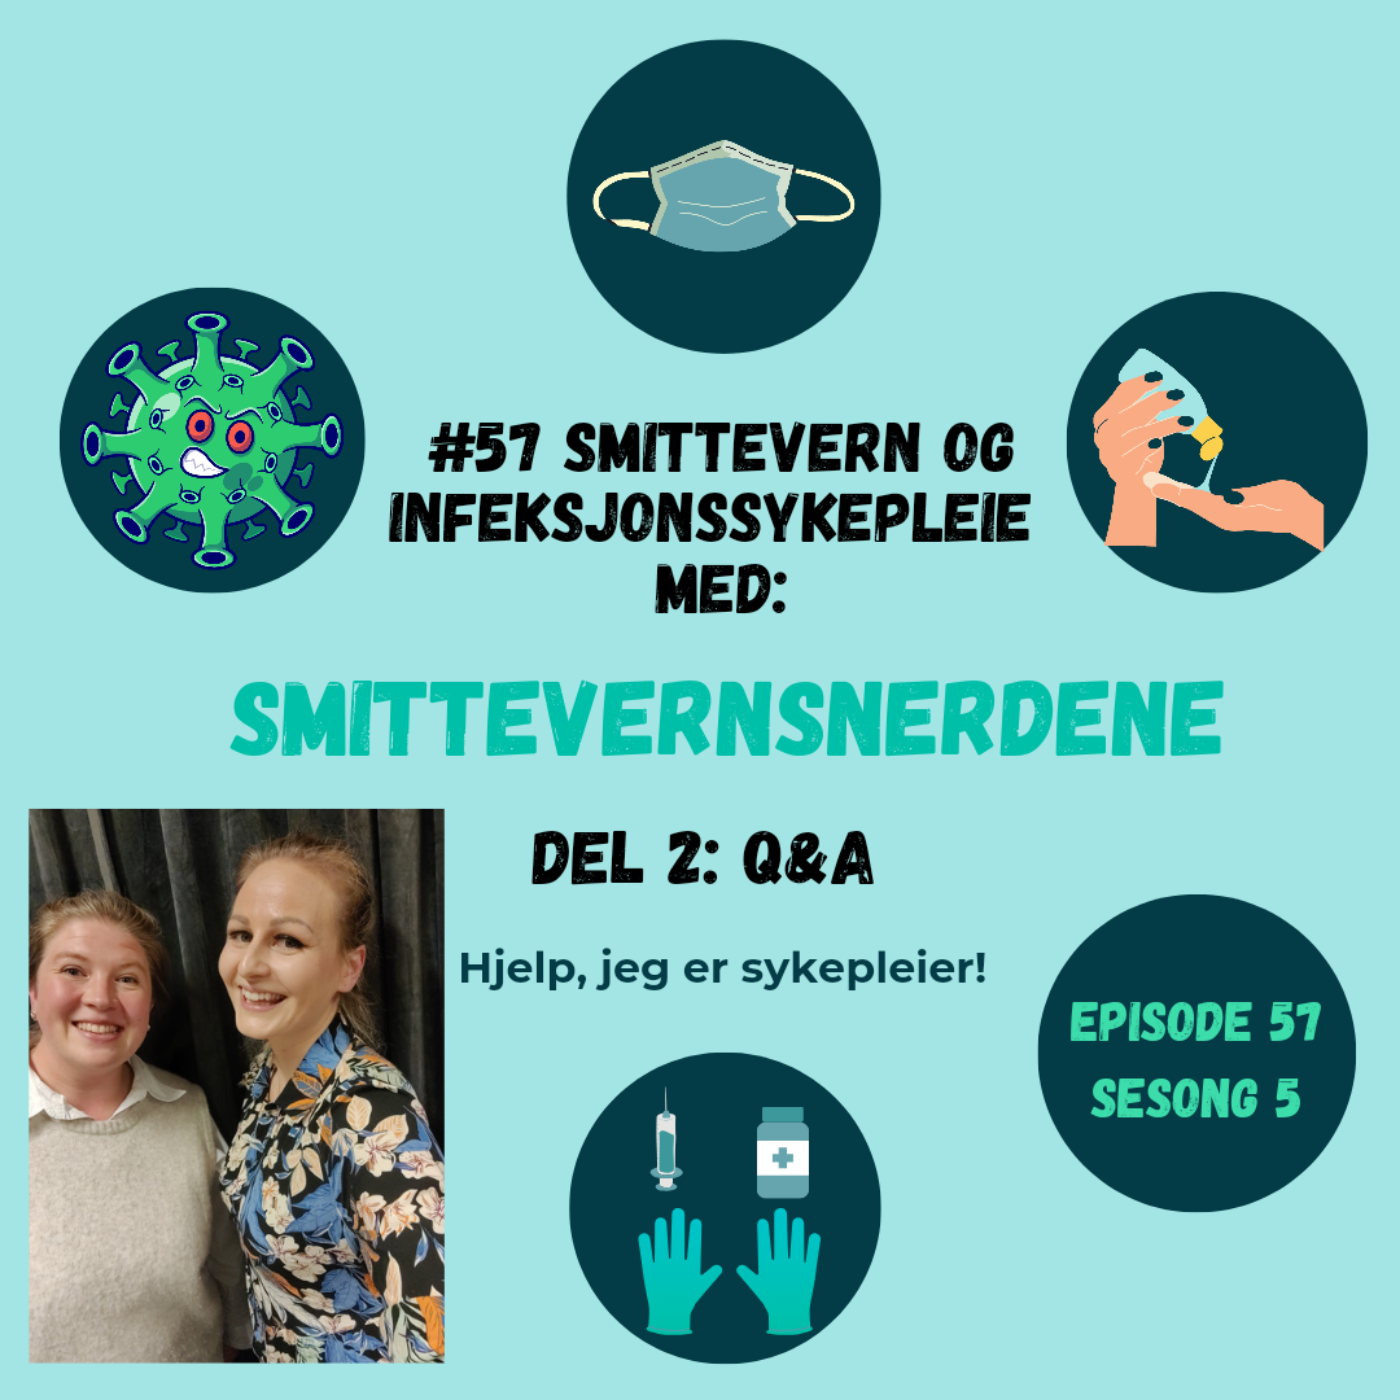 #57 Smittevern og infeksjonssykepleie med: Smittevernsnerdene, del 2: Q&A